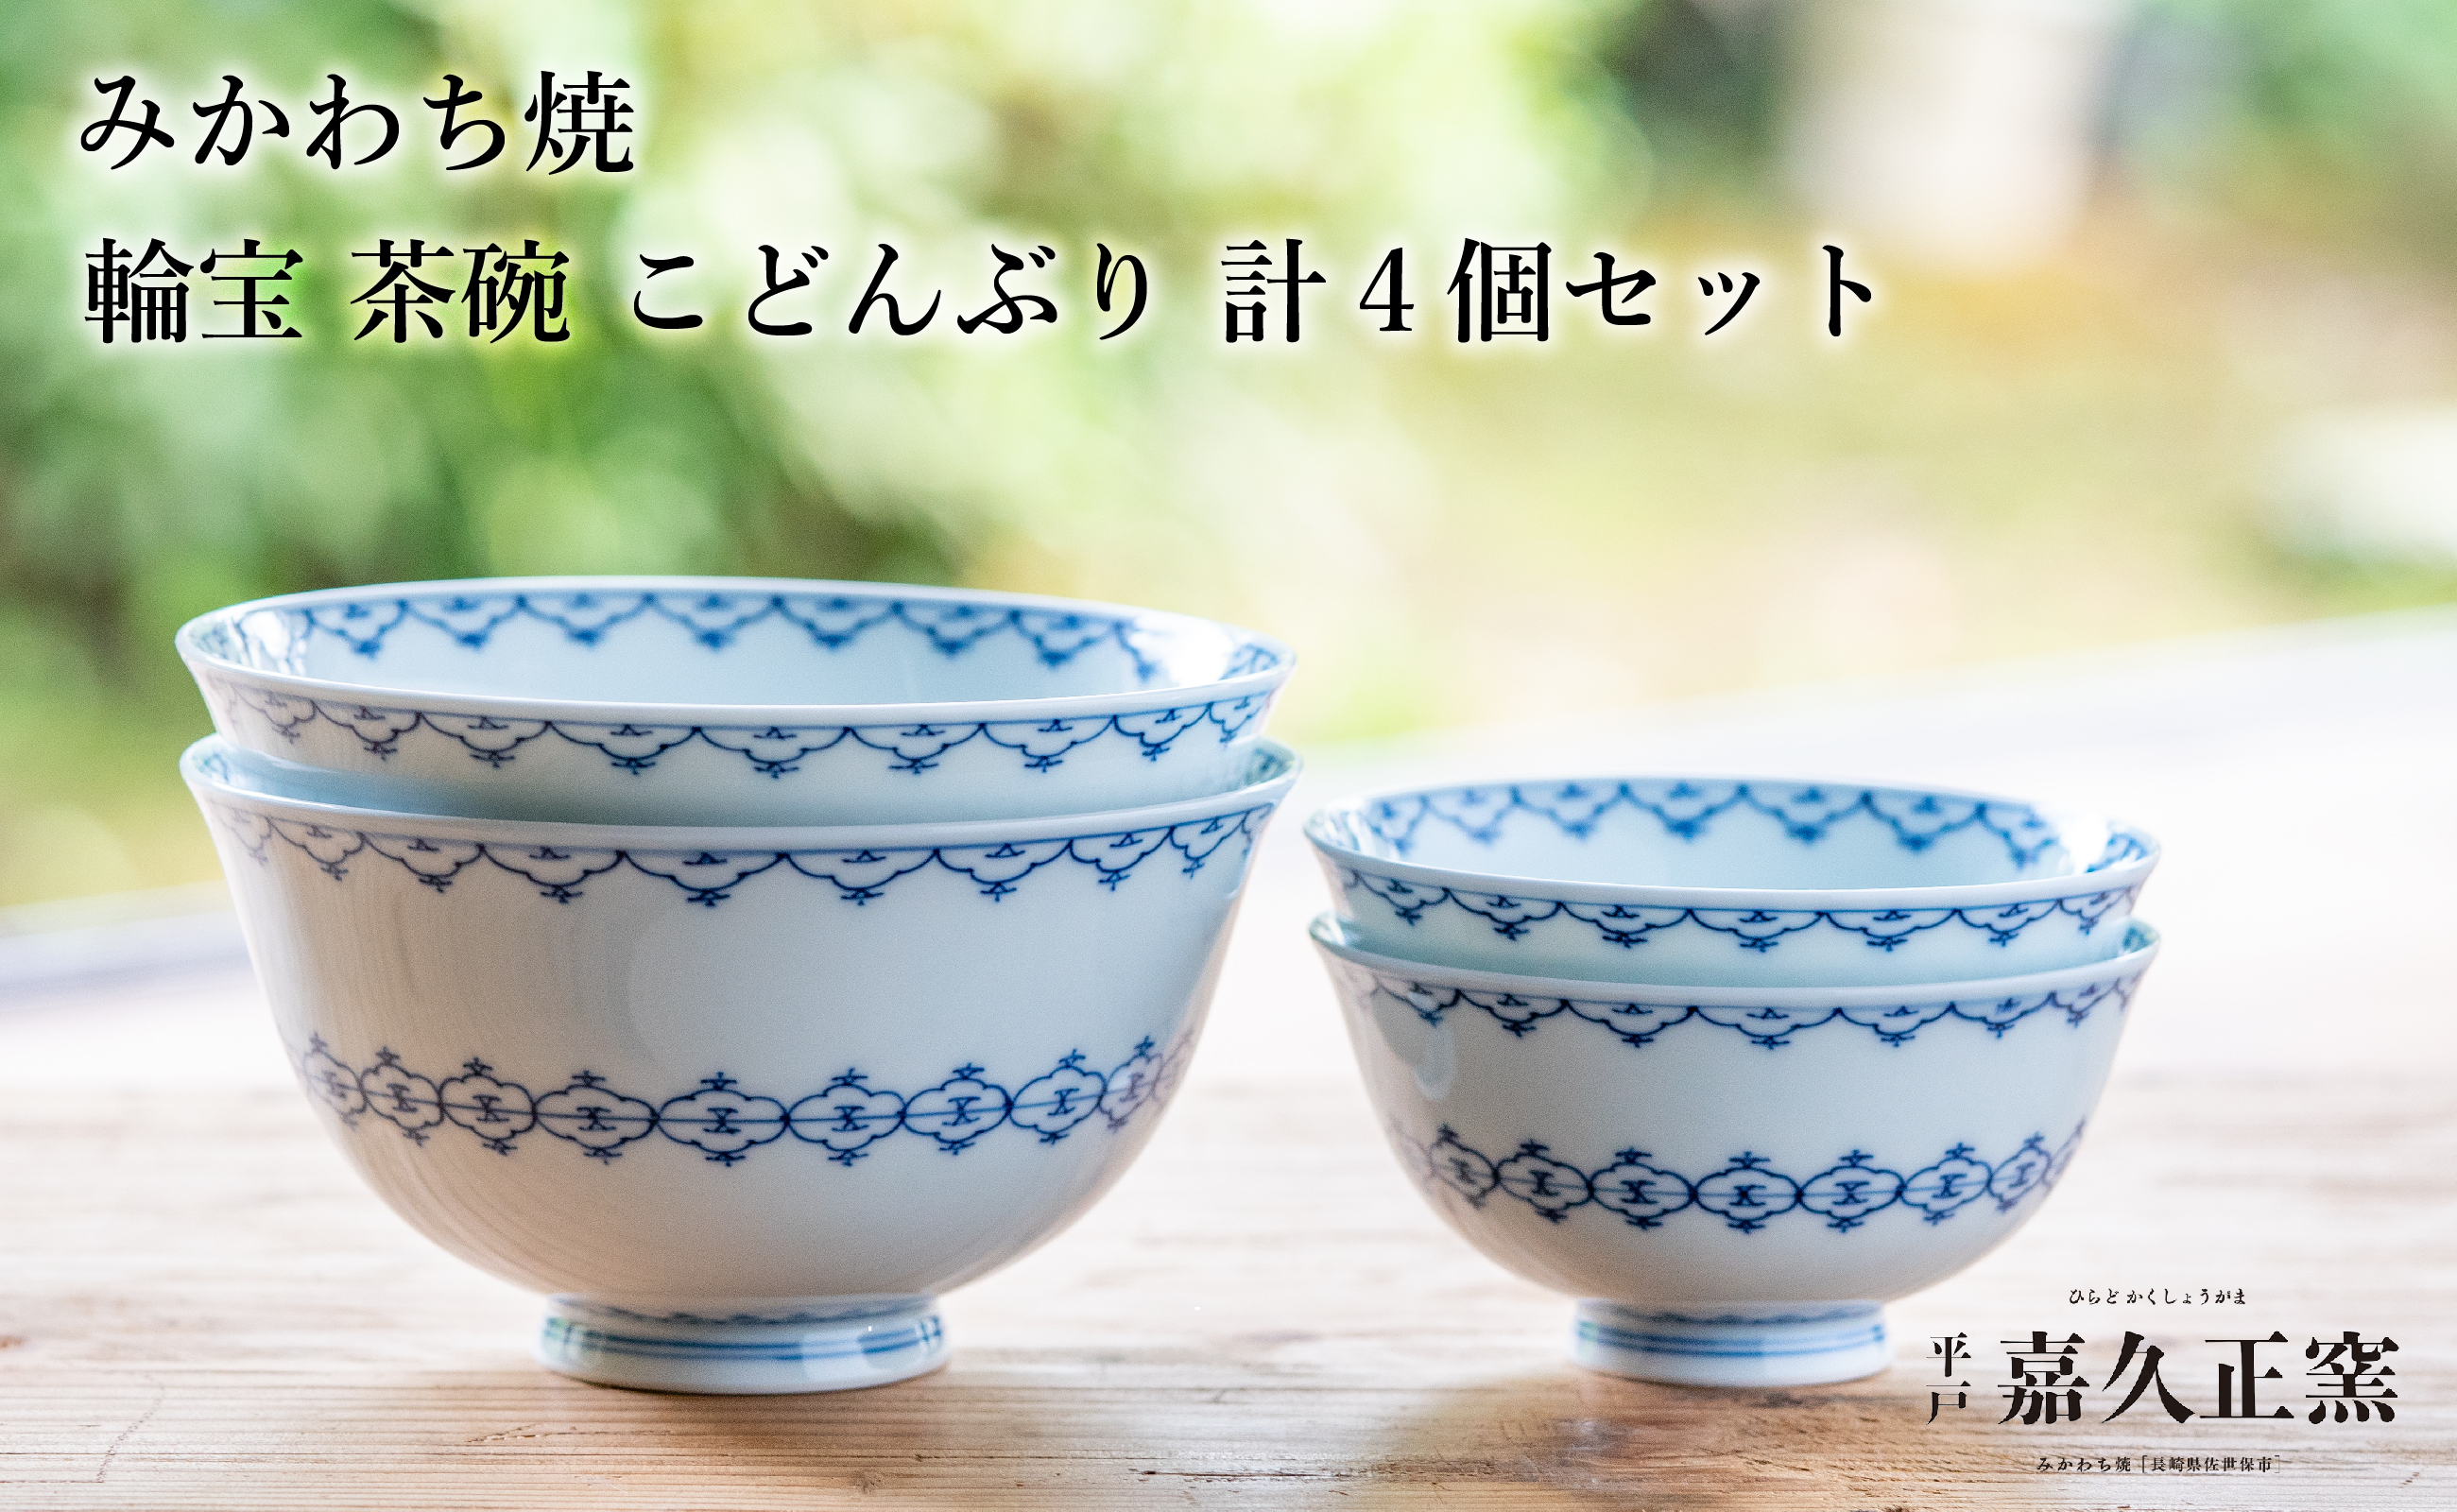 〈嘉久正窯〉輪宝 茶碗 こどんぶり 計4個セット  丼 飯碗. 食器 皿 手描き 染付